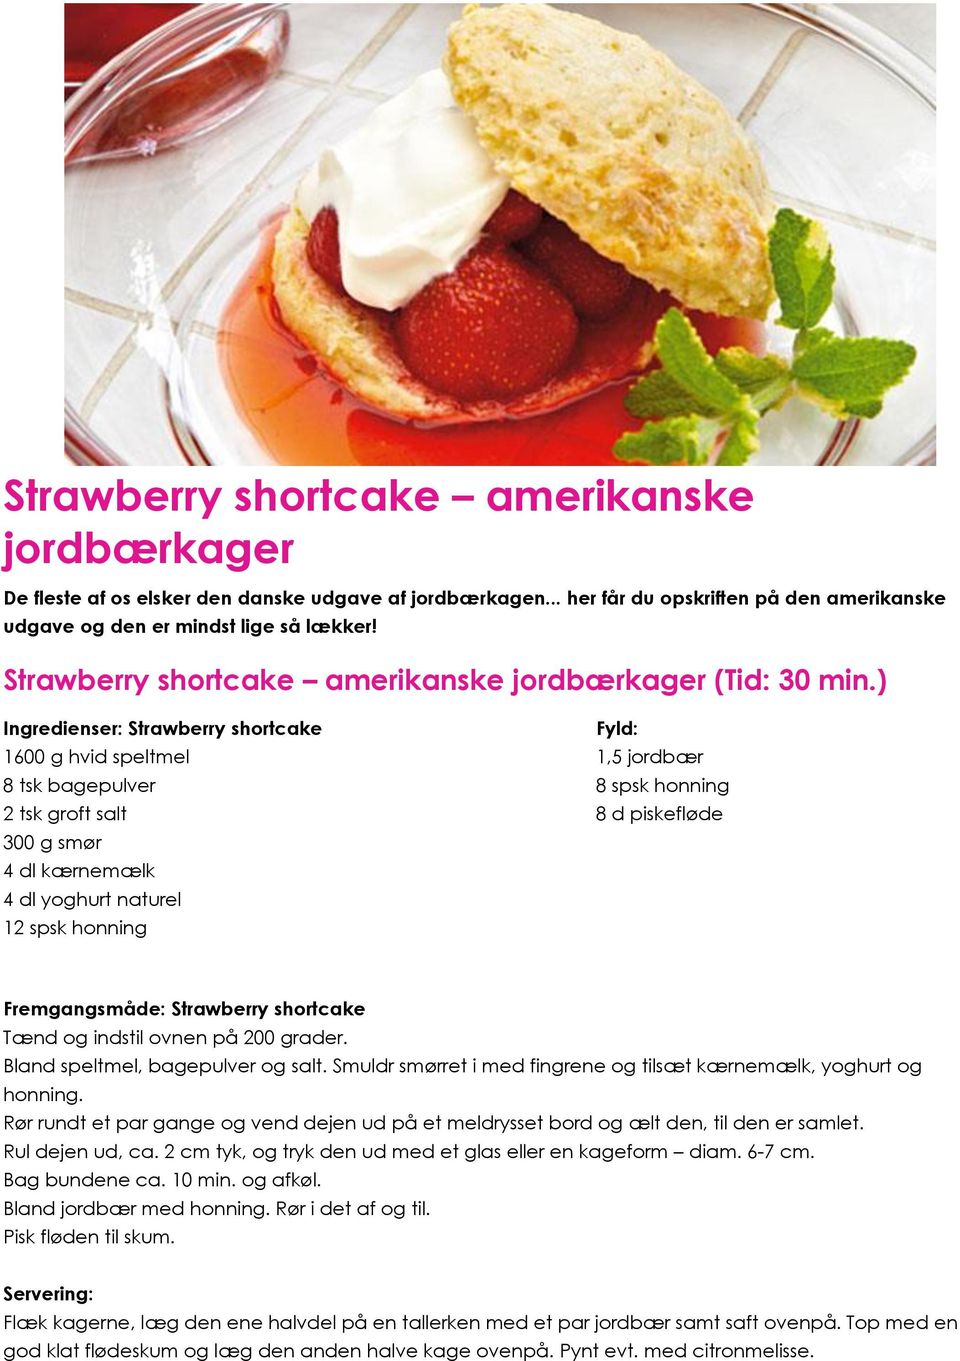 ) Ingredienser: Strawberry shortcake Fyld: 1600 g hvid speltmel 1,5 jordbær 8 tsk bagepulver 8 spsk honning 2 tsk groft salt 8 d piskefløde 300 g smør 4 dl kærnemælk 4 dl yoghurt naturel 12 spsk